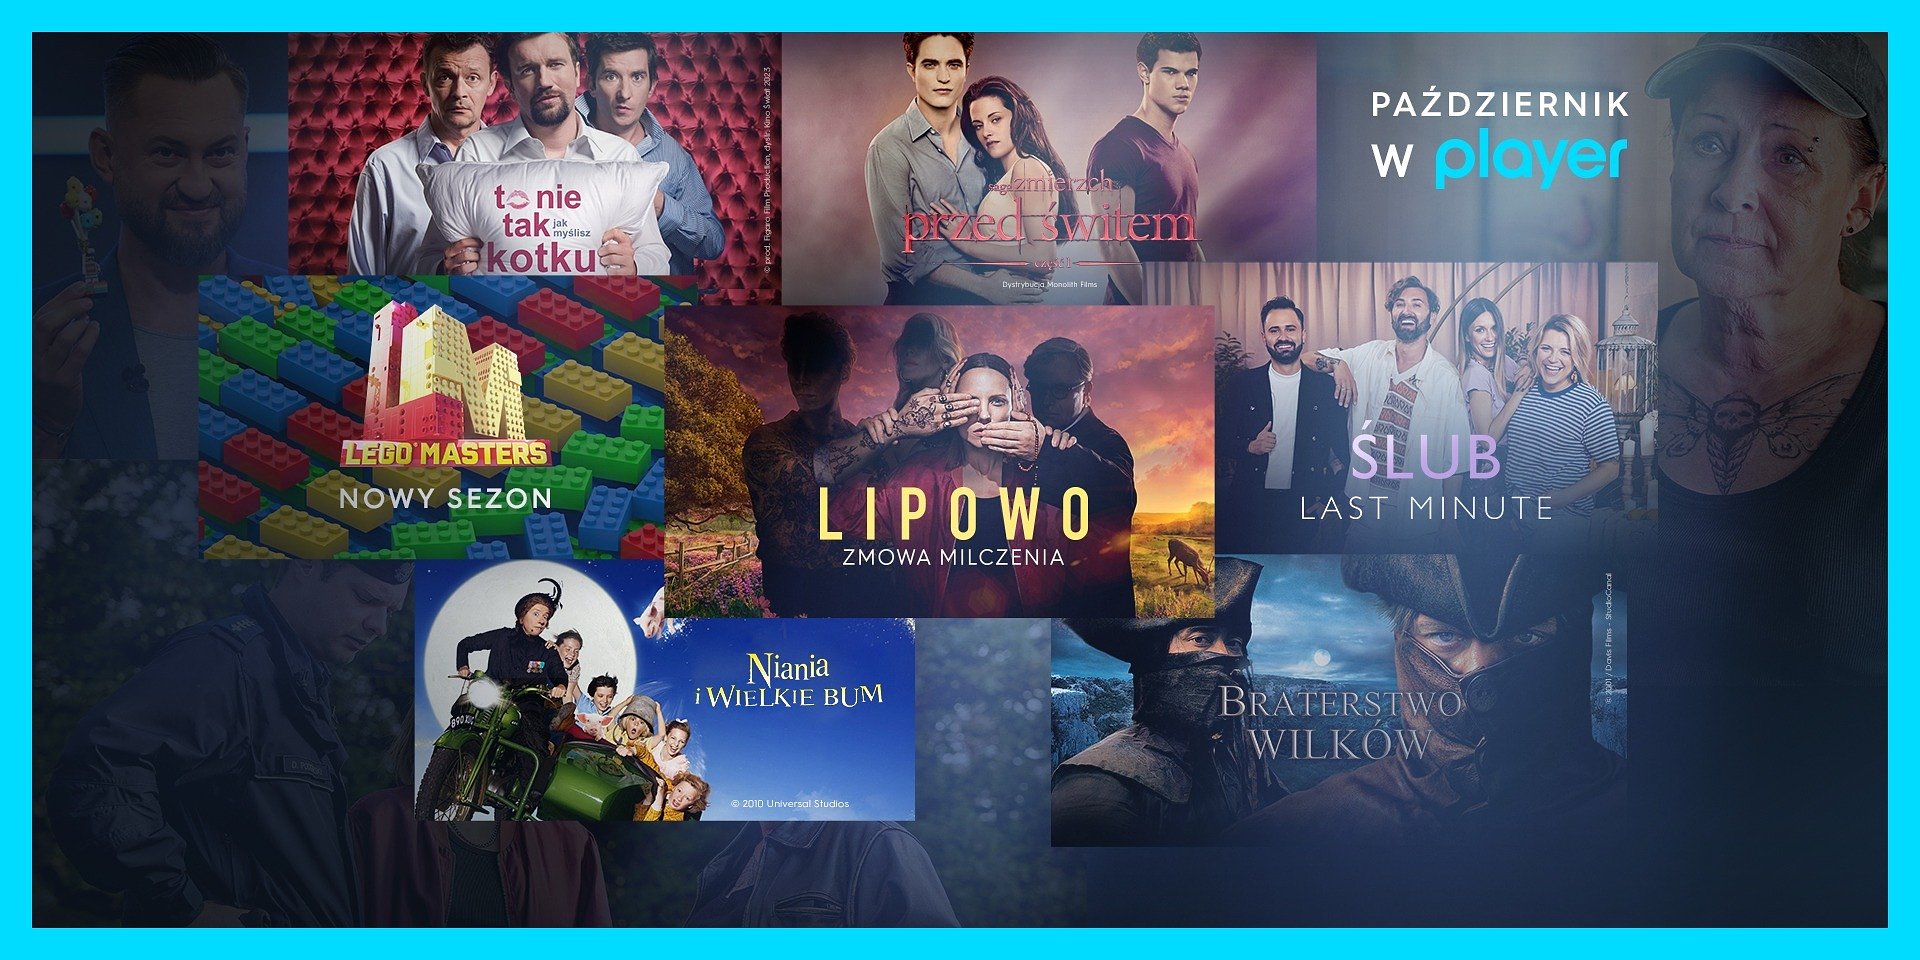 Player Listopad 2022 – filmy, seriale i programy. Jakie nowości i premiery?  - Co za tydzień